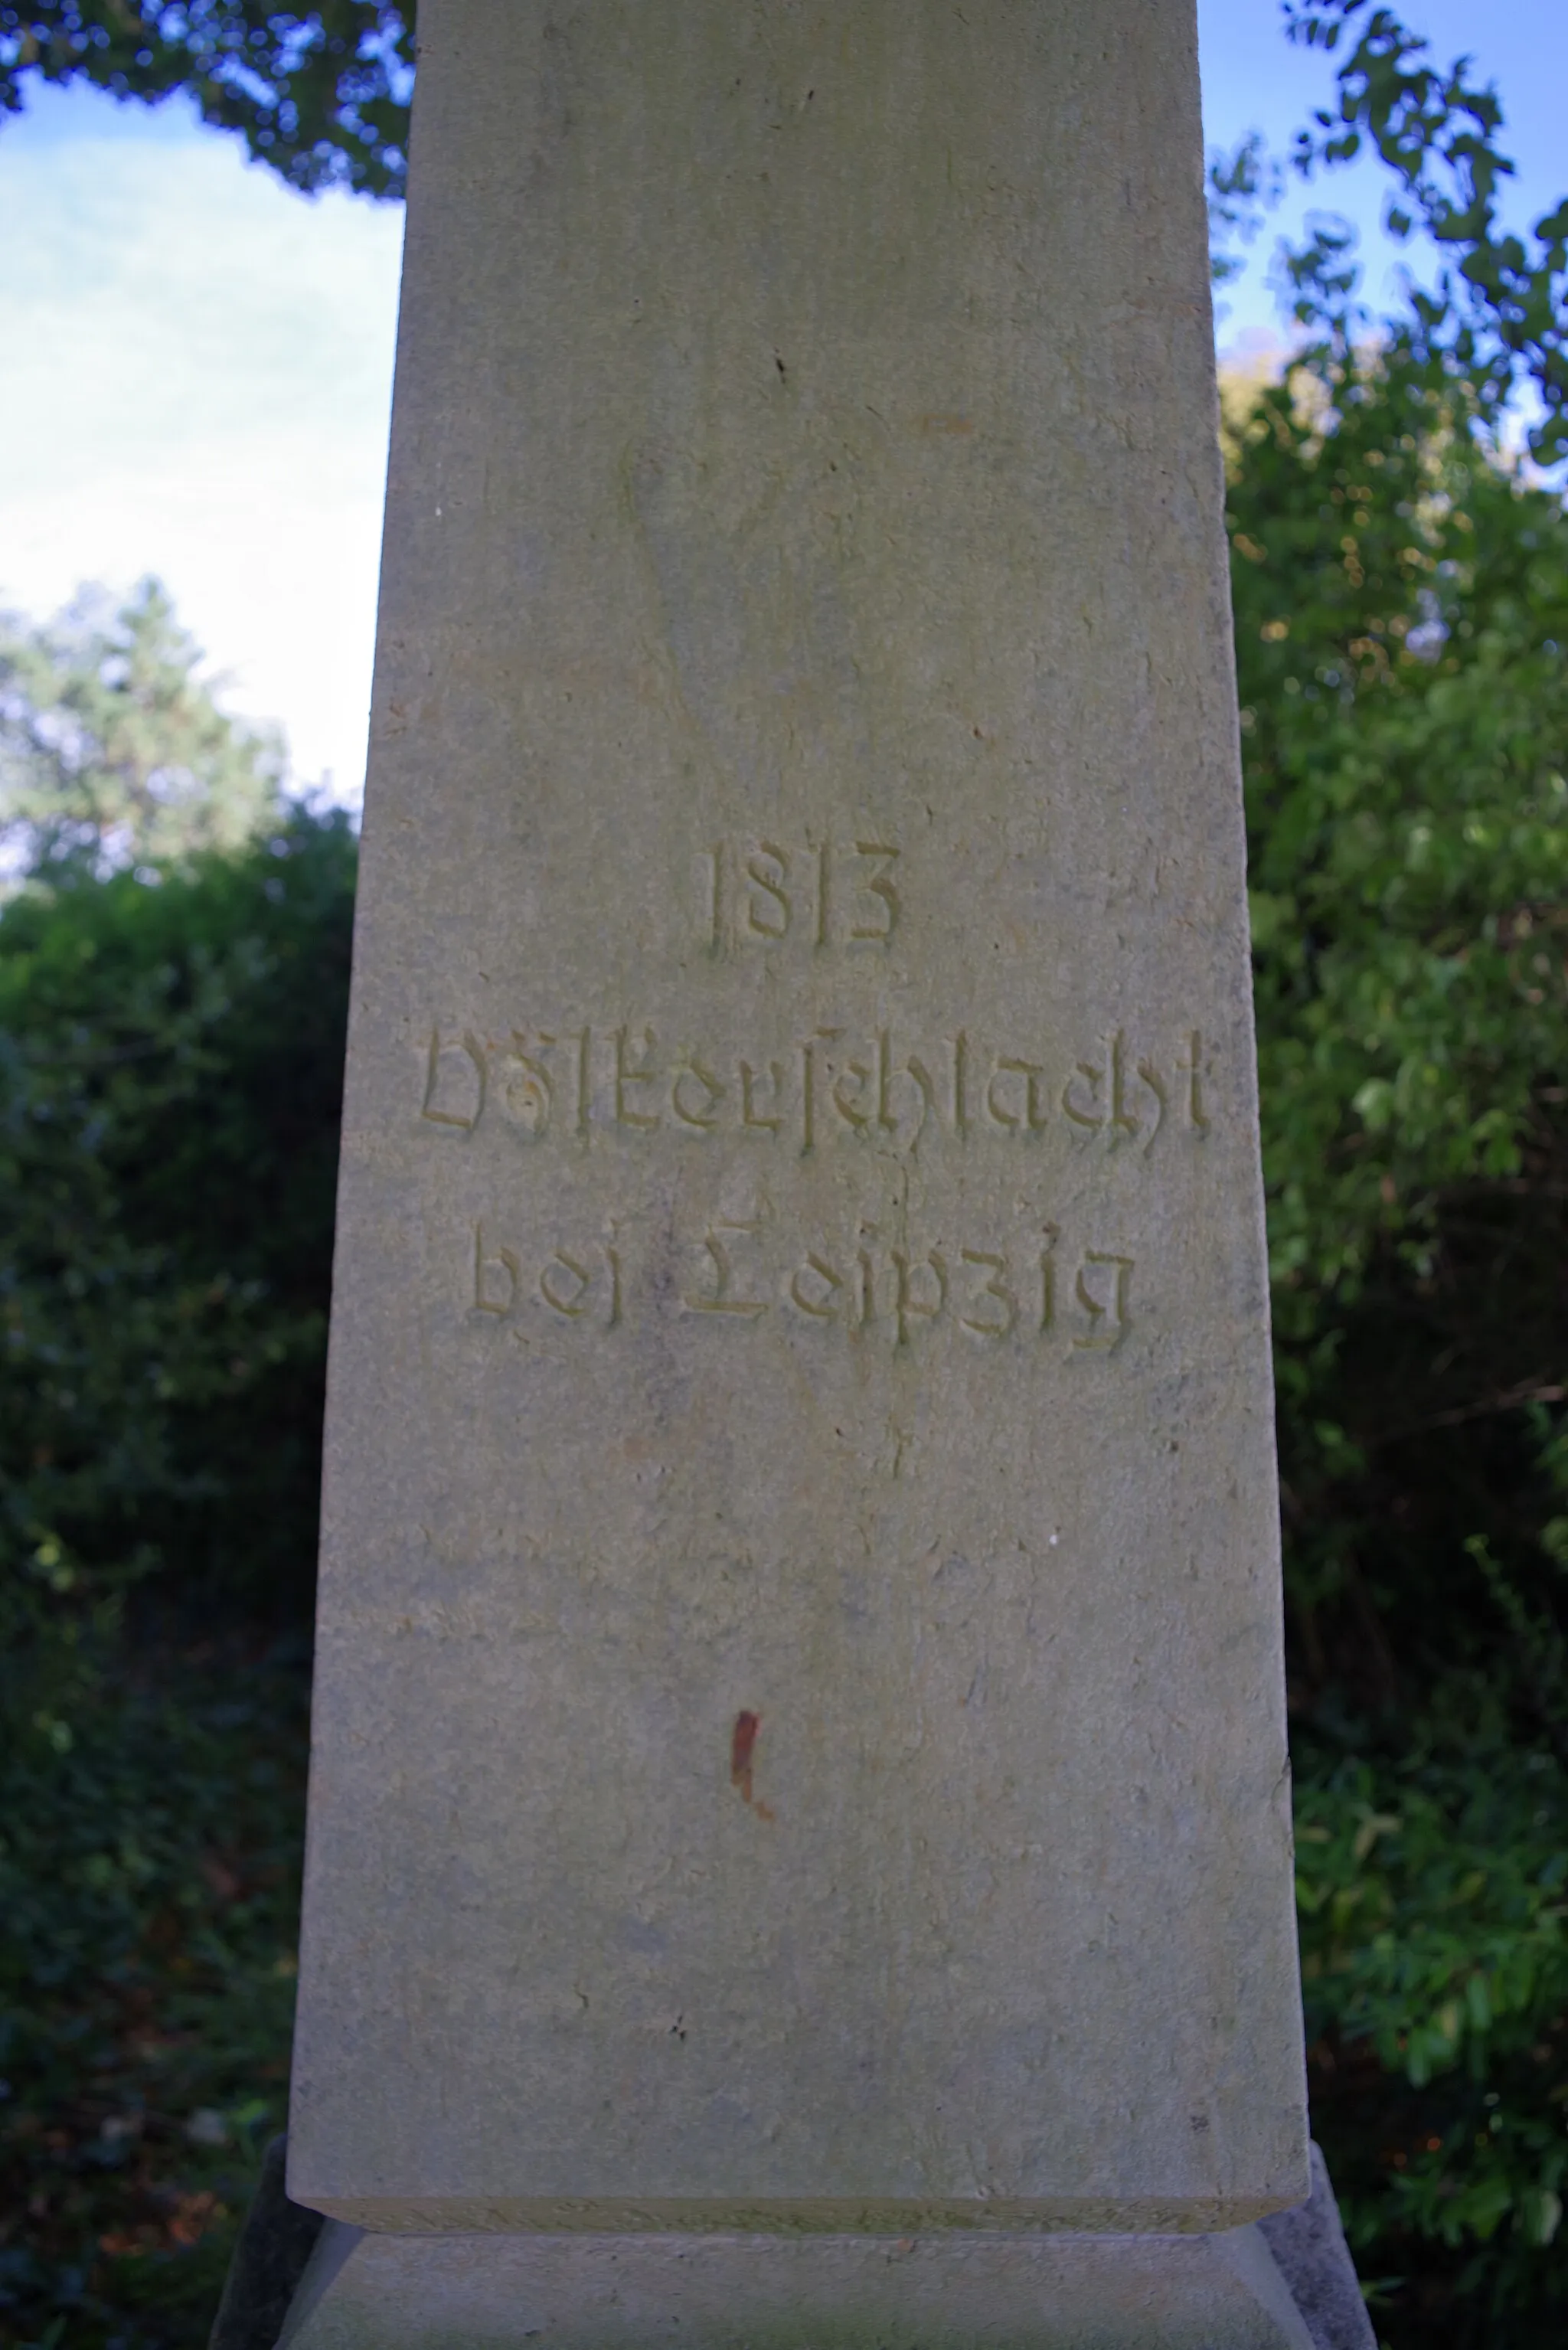 Photo showing: Obere Inschrift auf dem Denkmal für die Völkerschlacht bei Leipzig in Stelle: "1813 Völkerschlacht bei Leipzig"